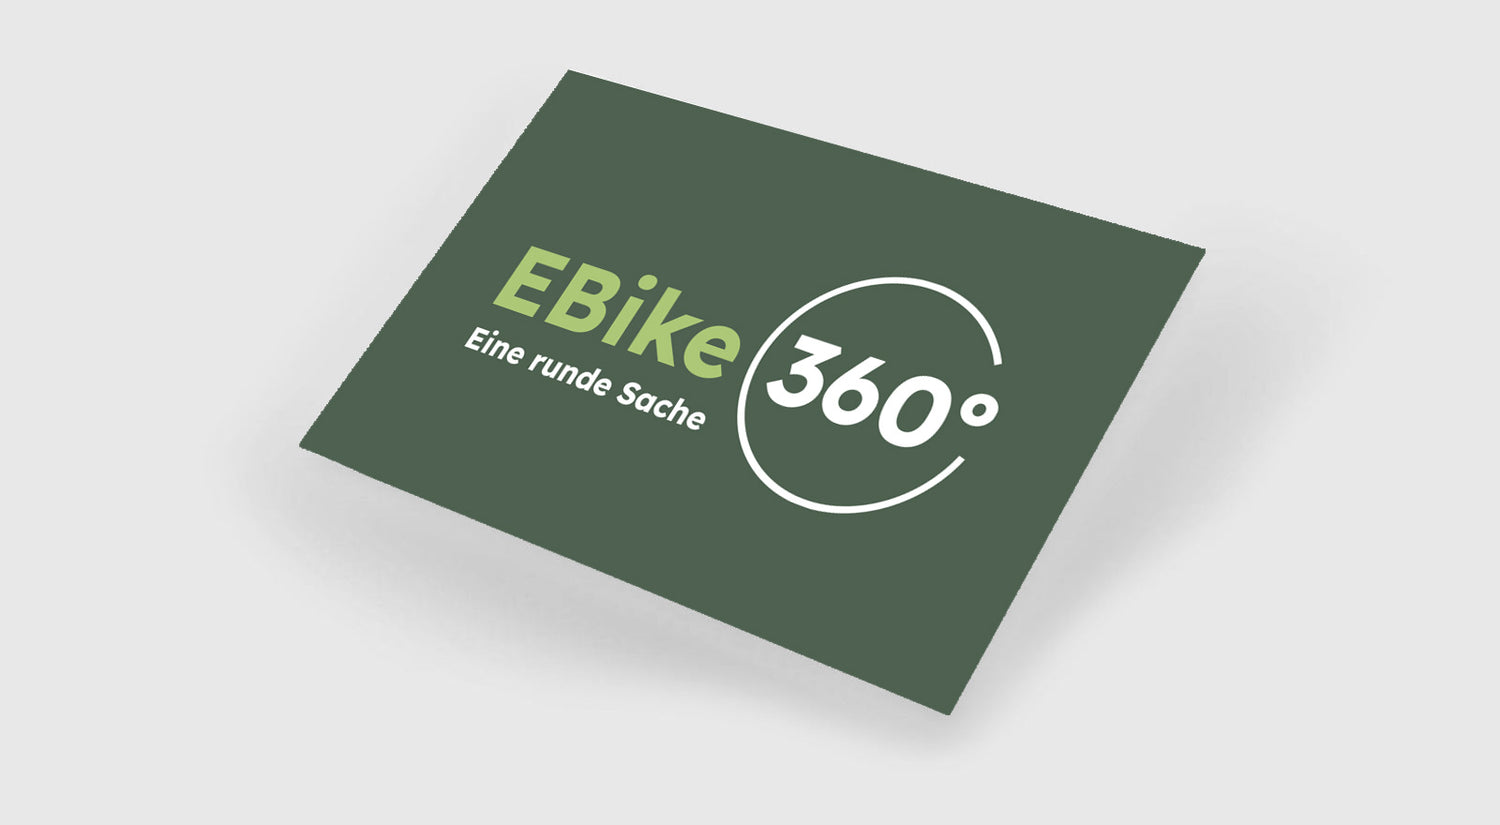 EBike360.ch-E-bike-Service-Manuel-Liechti